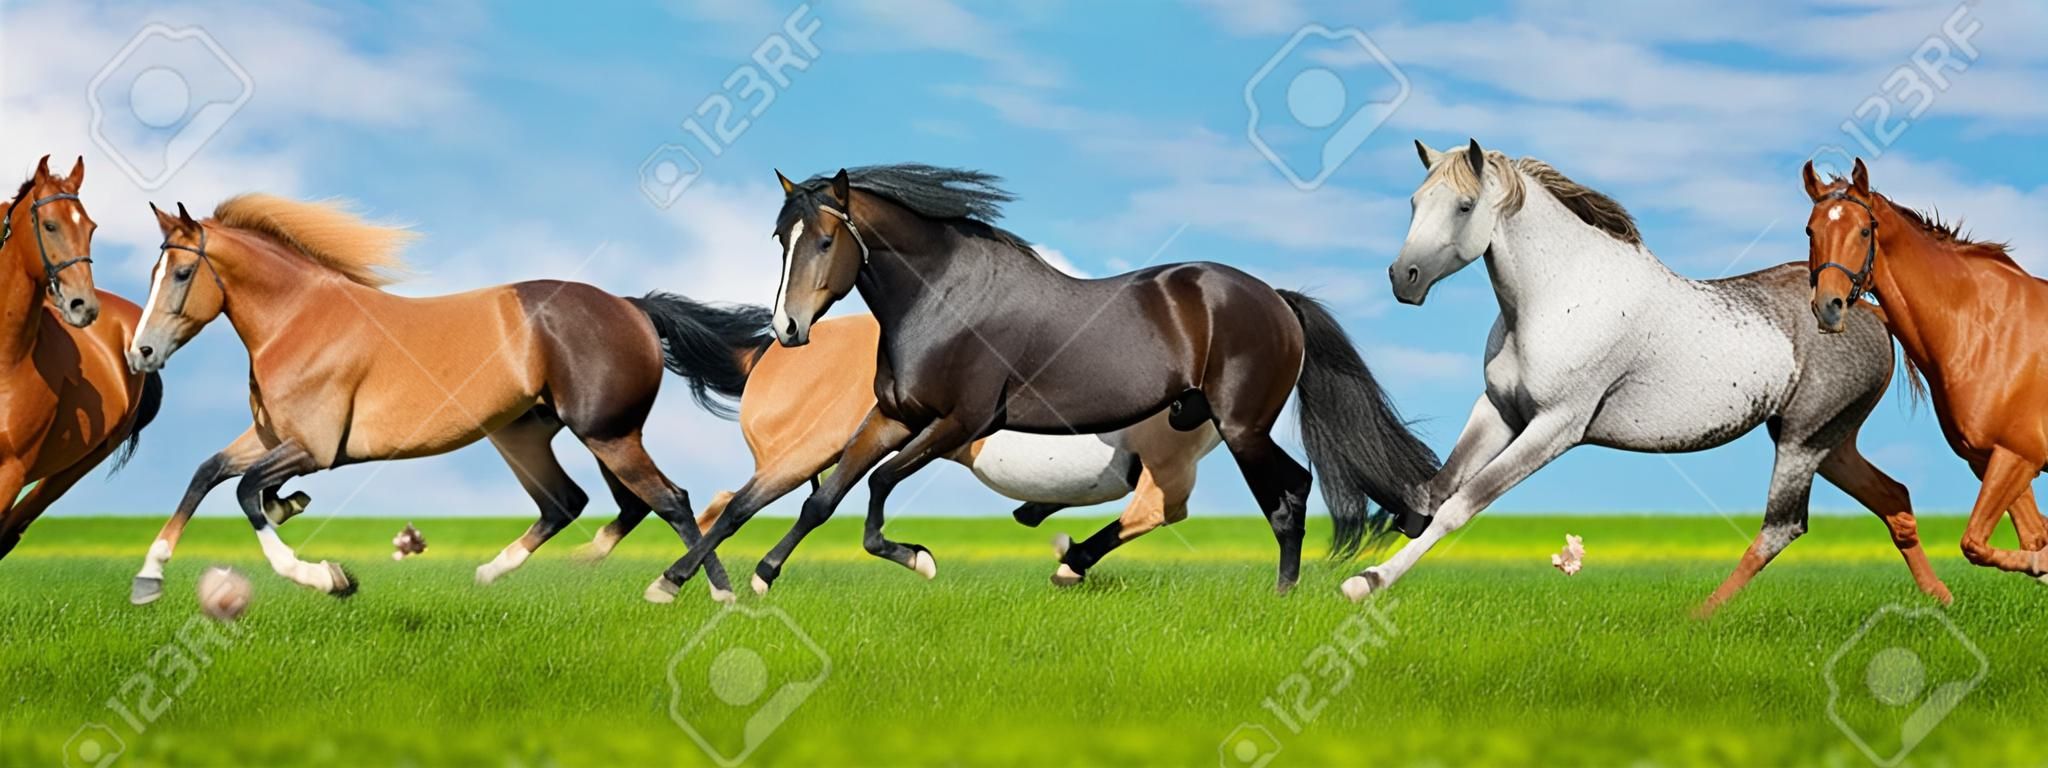 Paarden gratis run galop i groen veld met blauwe lucht achter